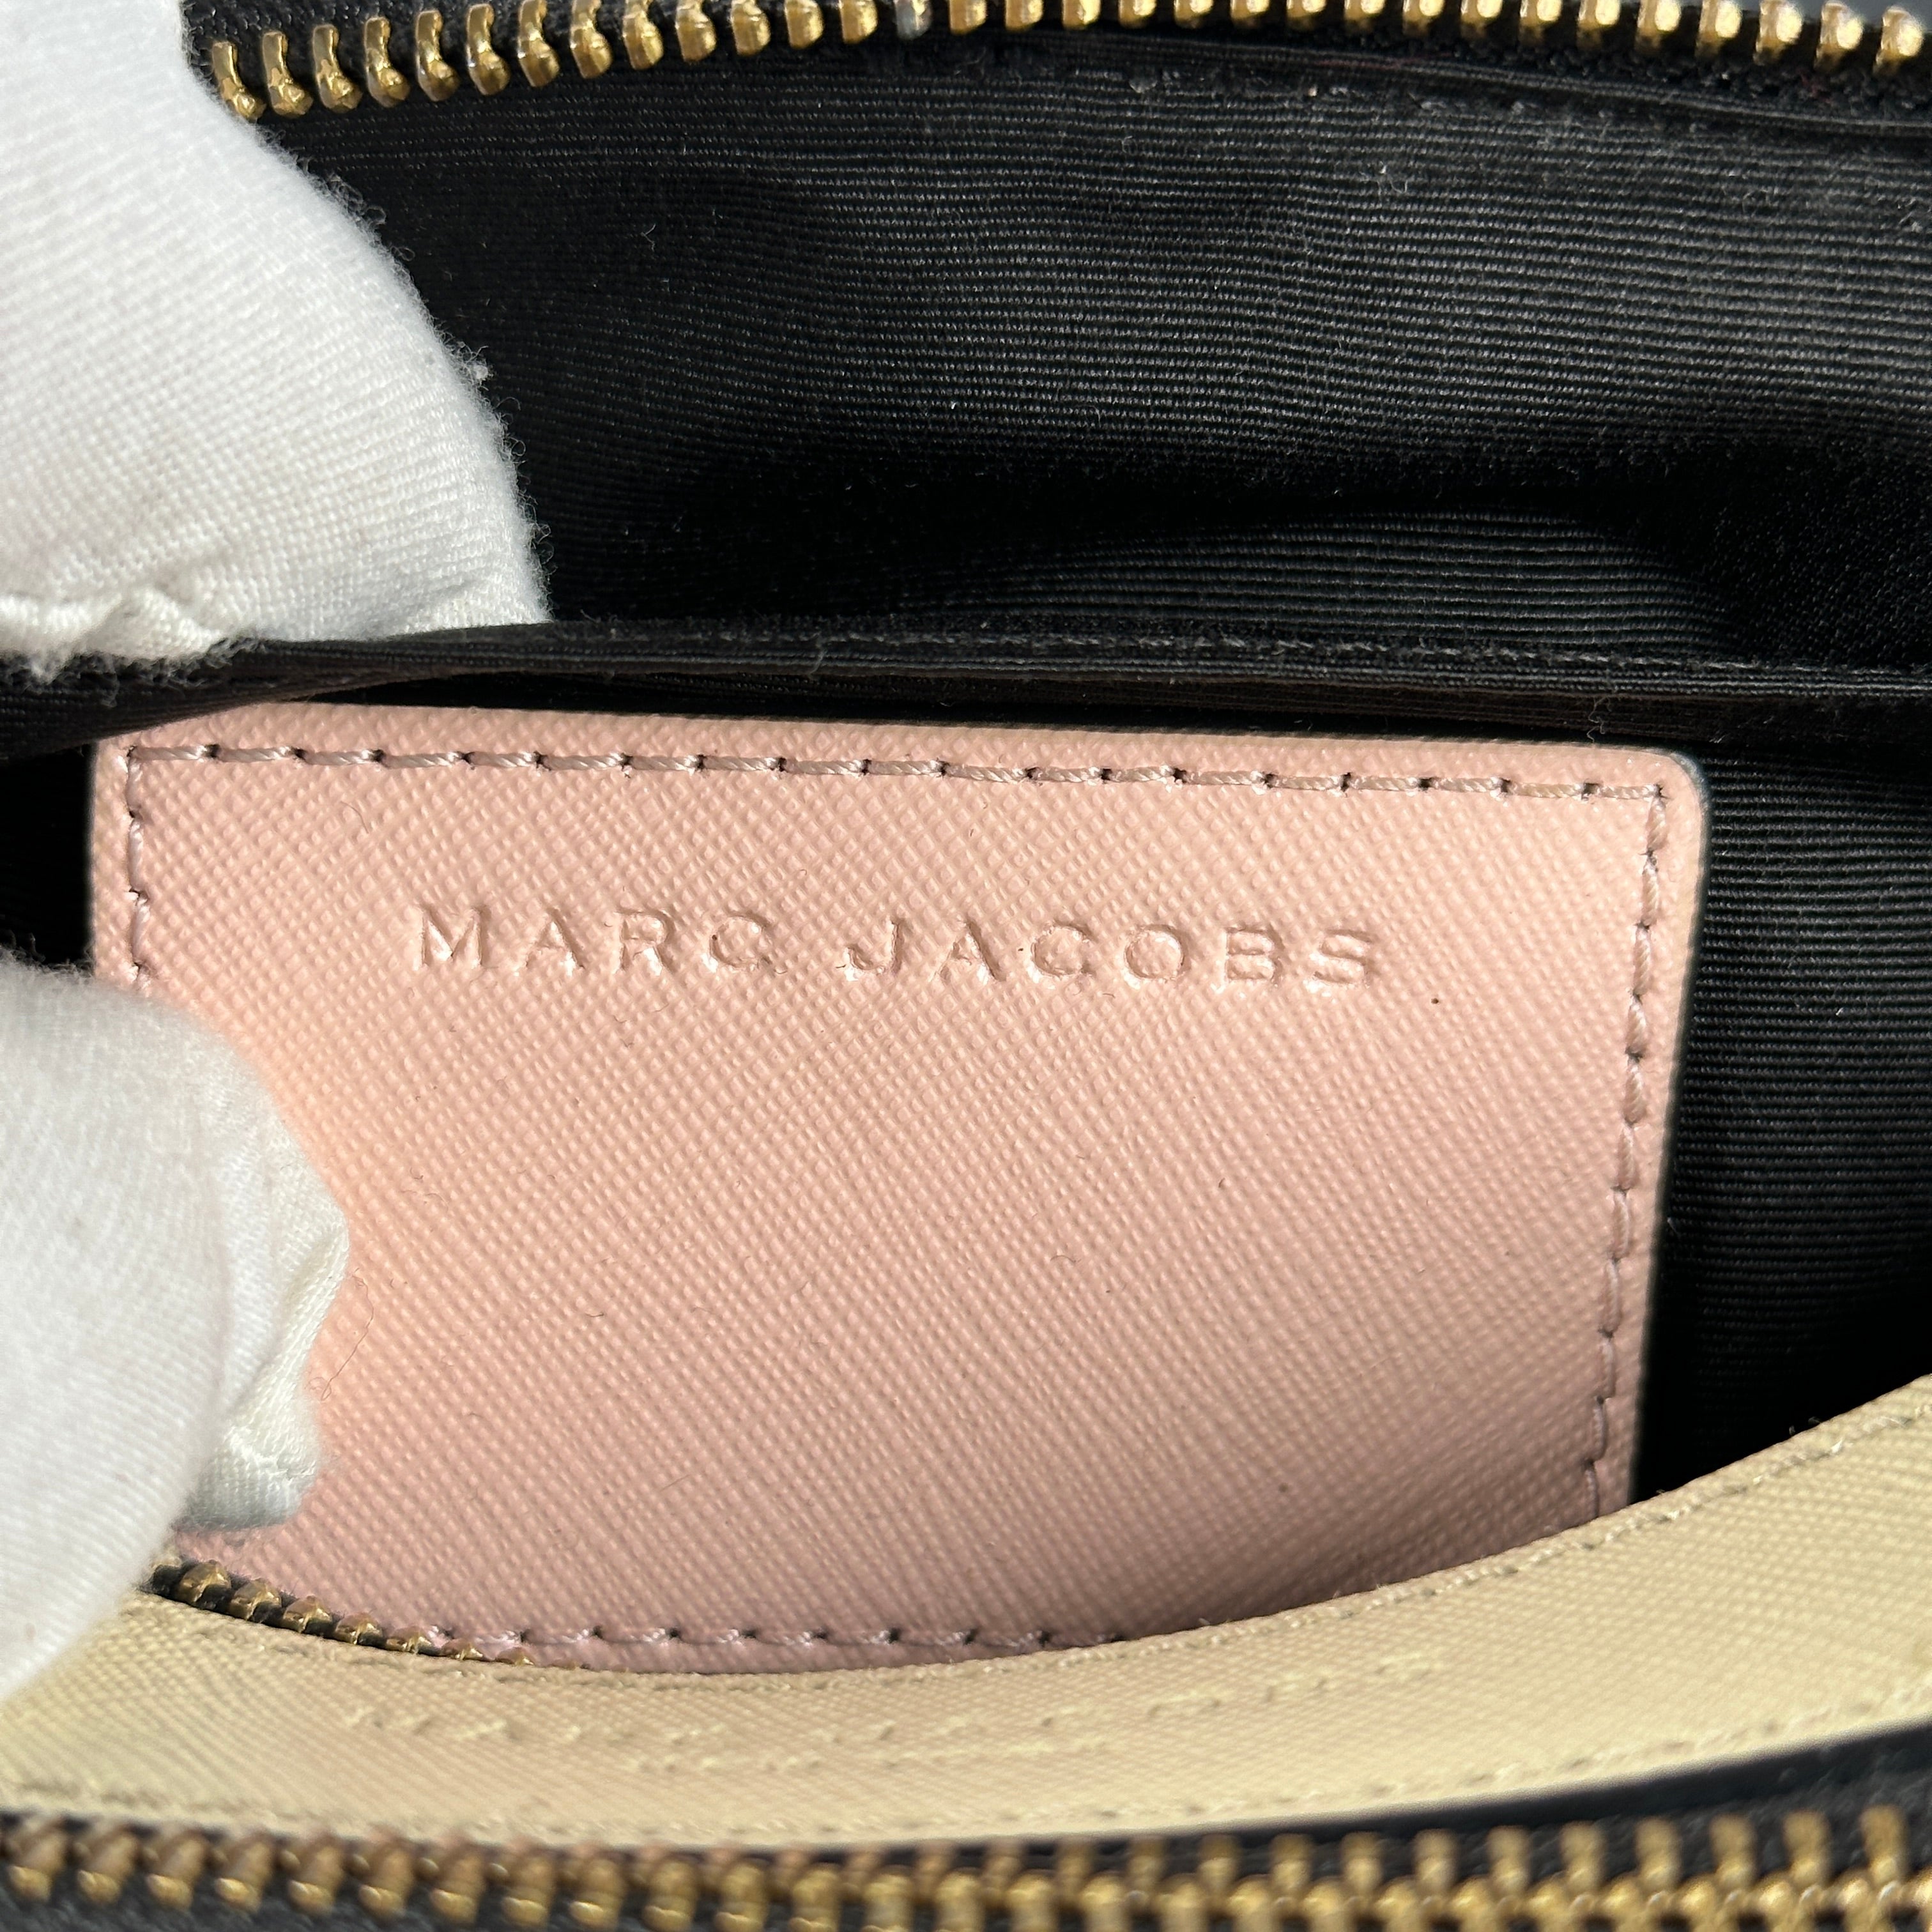 LaRach - Marc Jacobs Snapshot, Pastel Color New colour